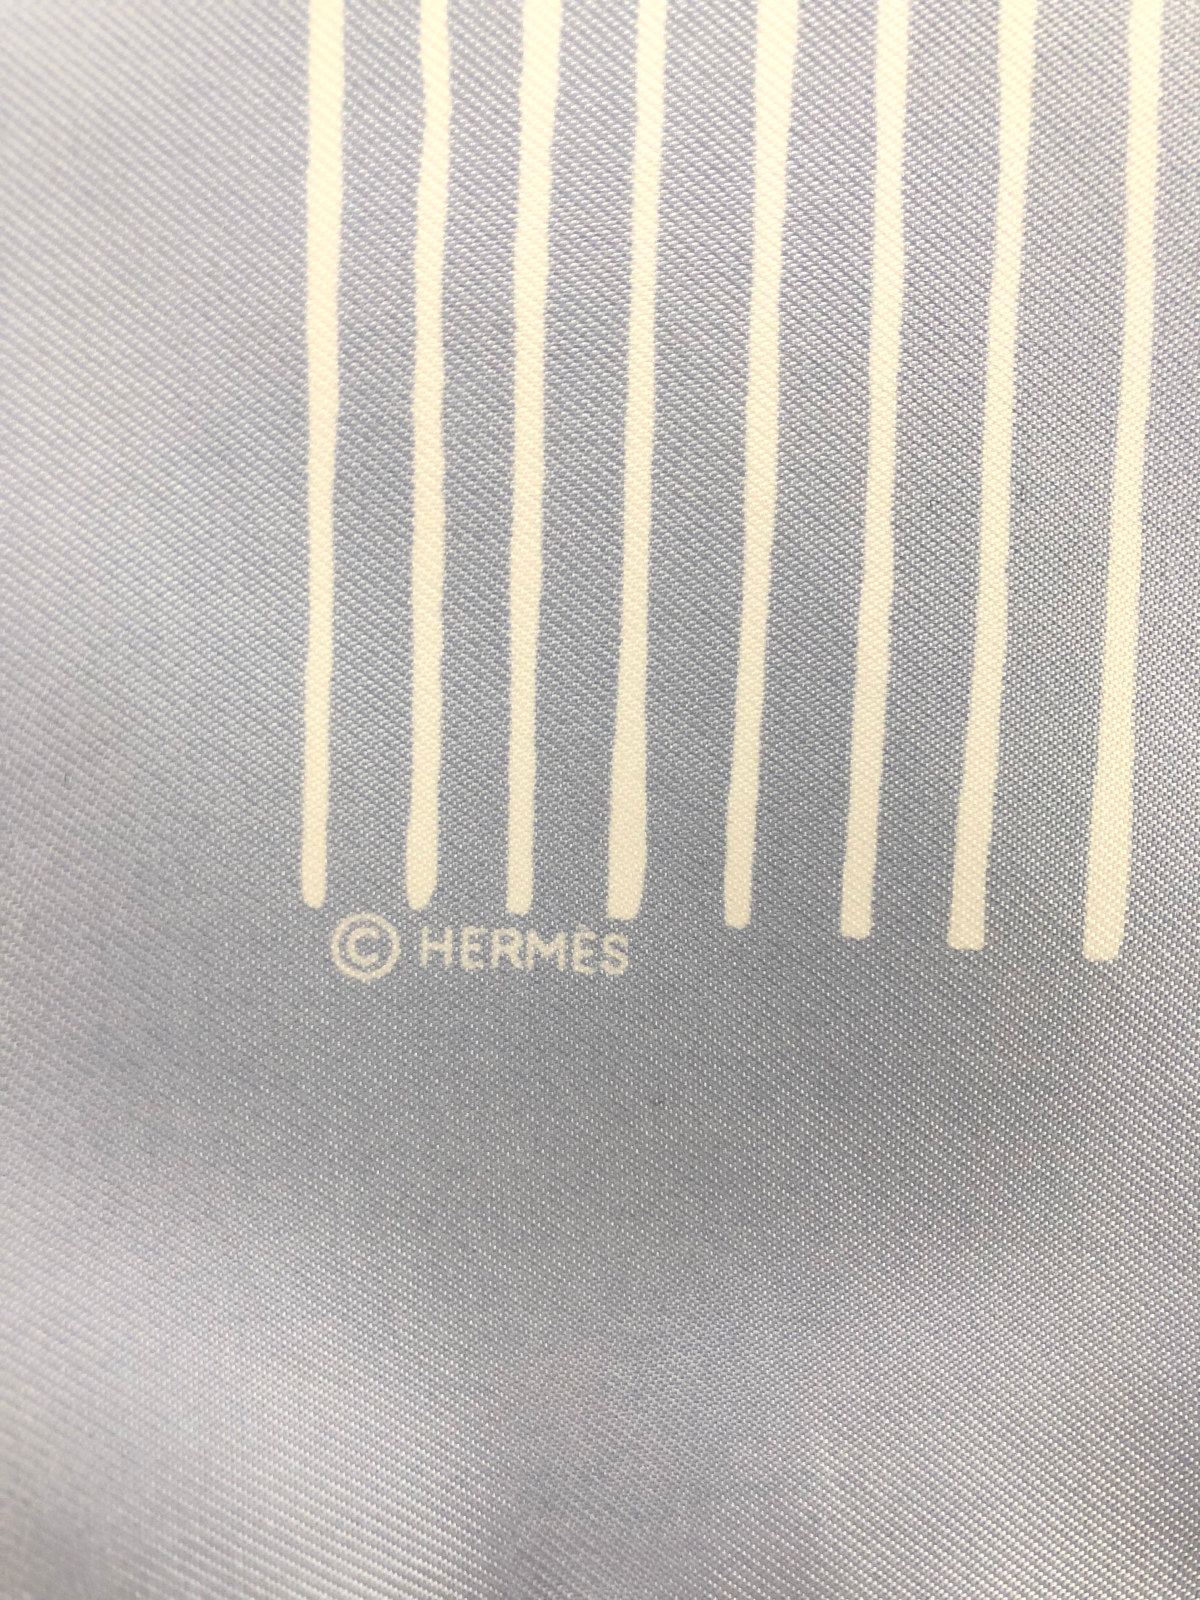 HERMES Blue Gradient Silk Scarf